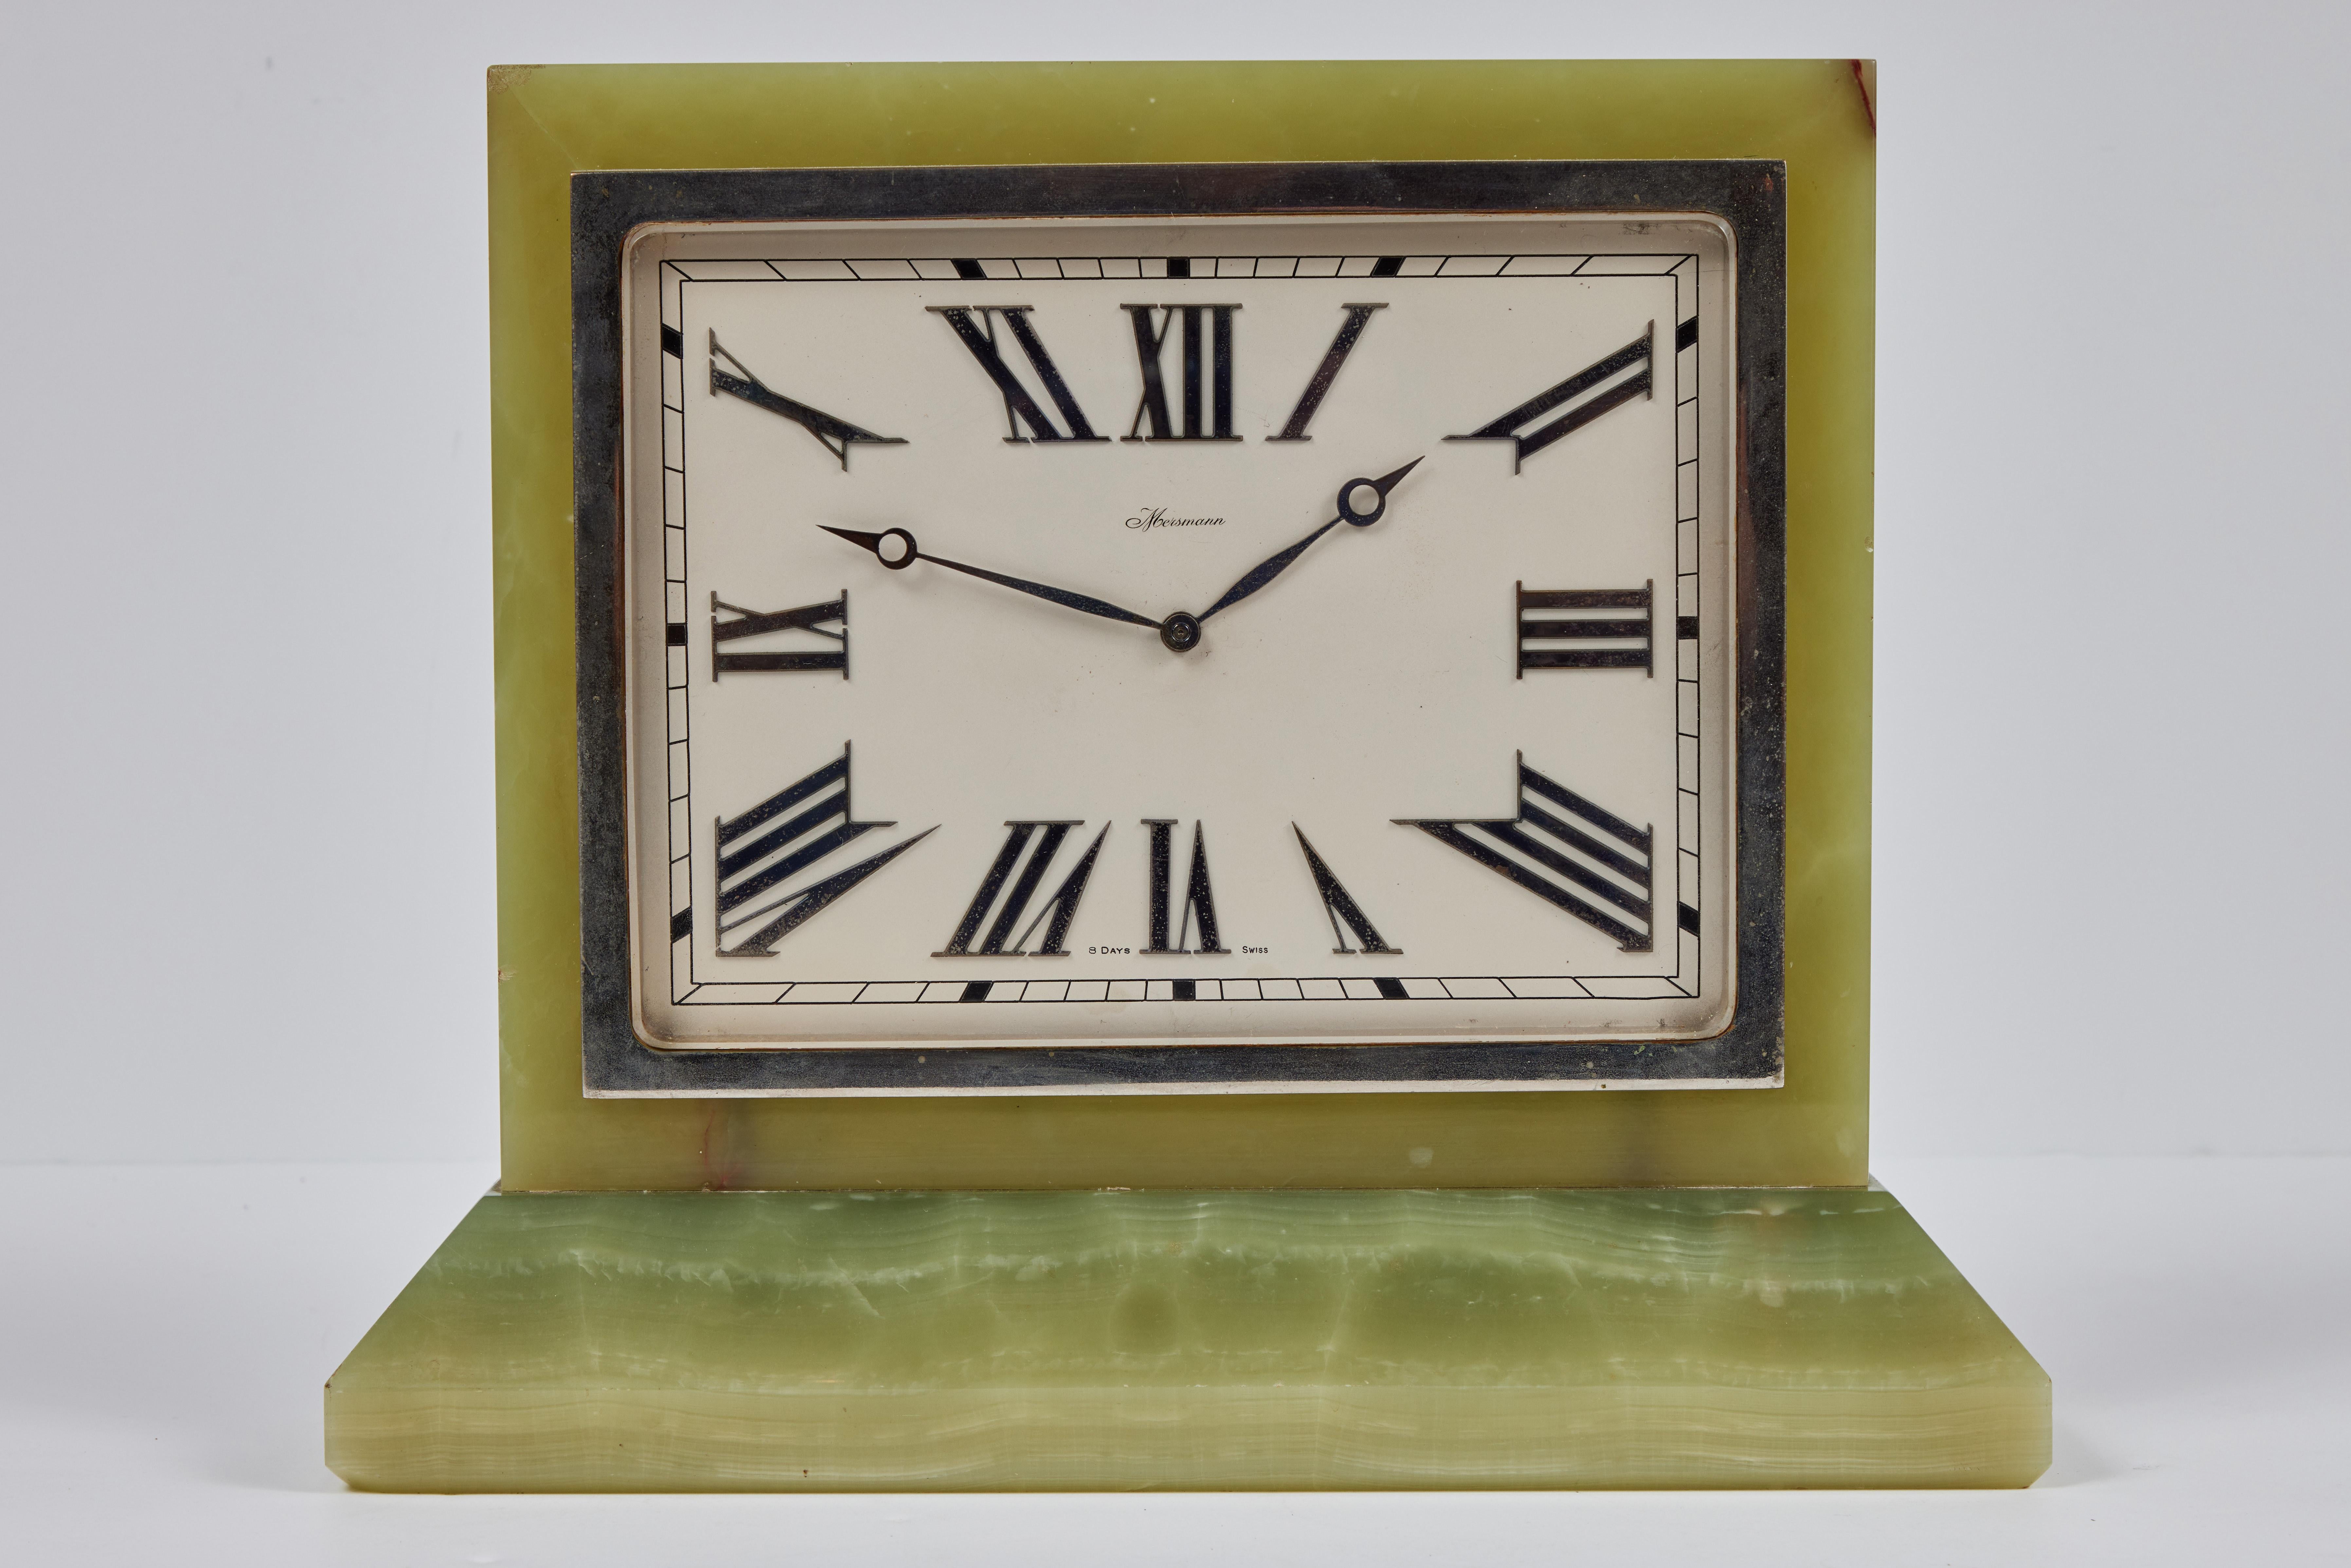 Une grande et élégante horloge de table à boucle du fabricant suisse Mersmann. La pièce d'horlogerie rectangulaire indique 